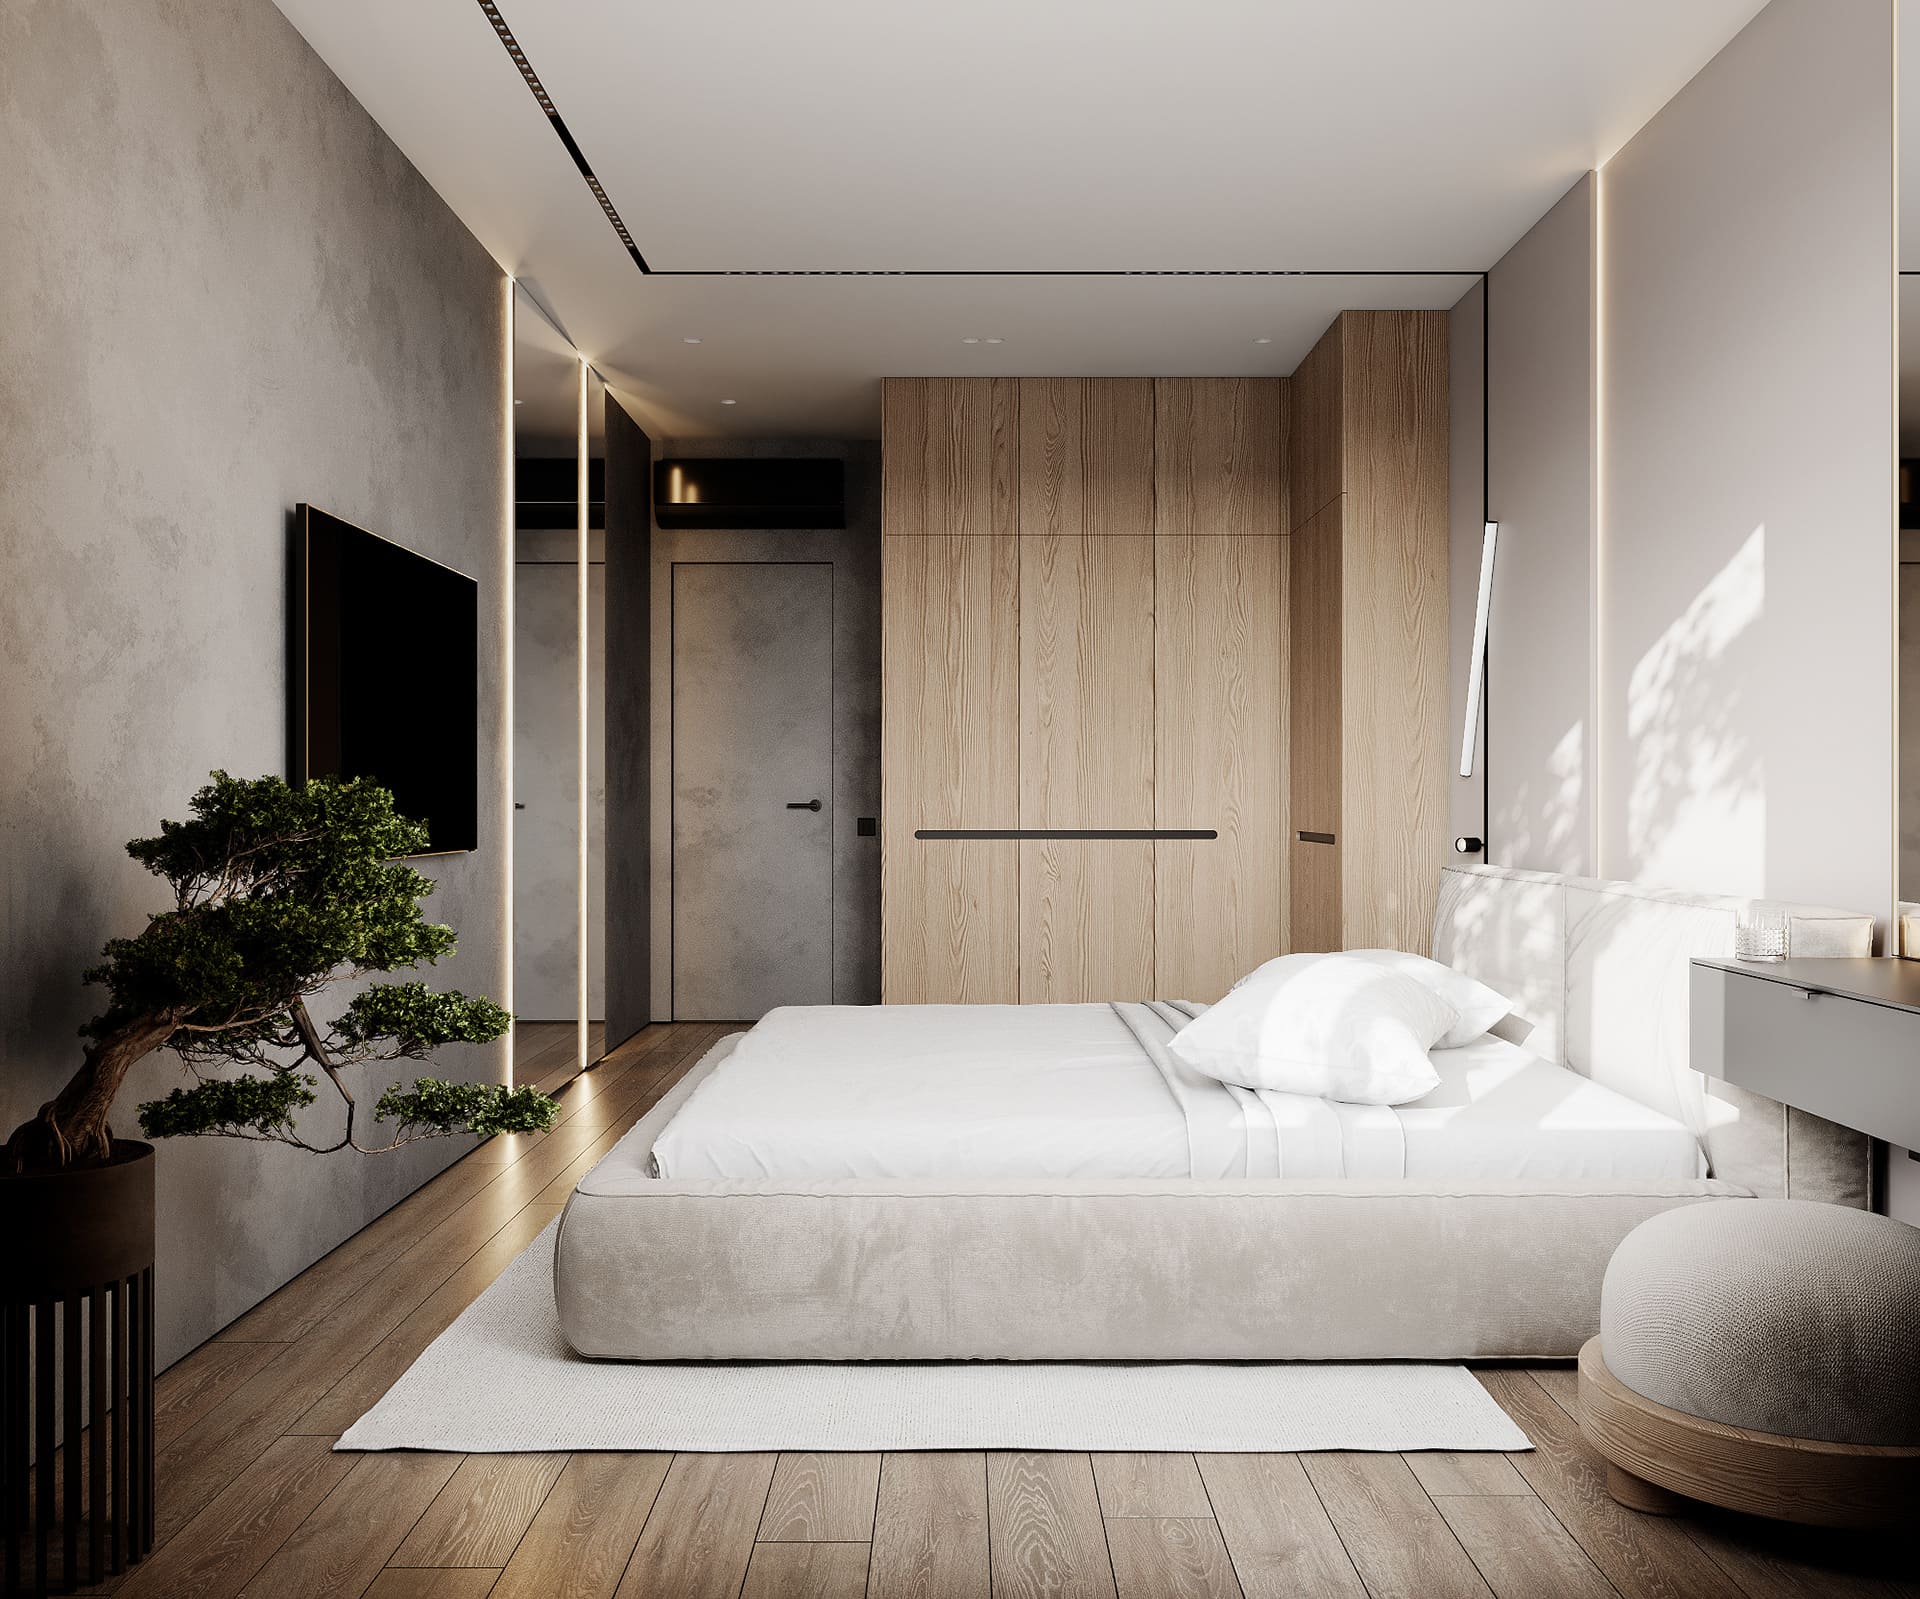 Лаконичная квартира в стиле минимализм, спальня, фото 18